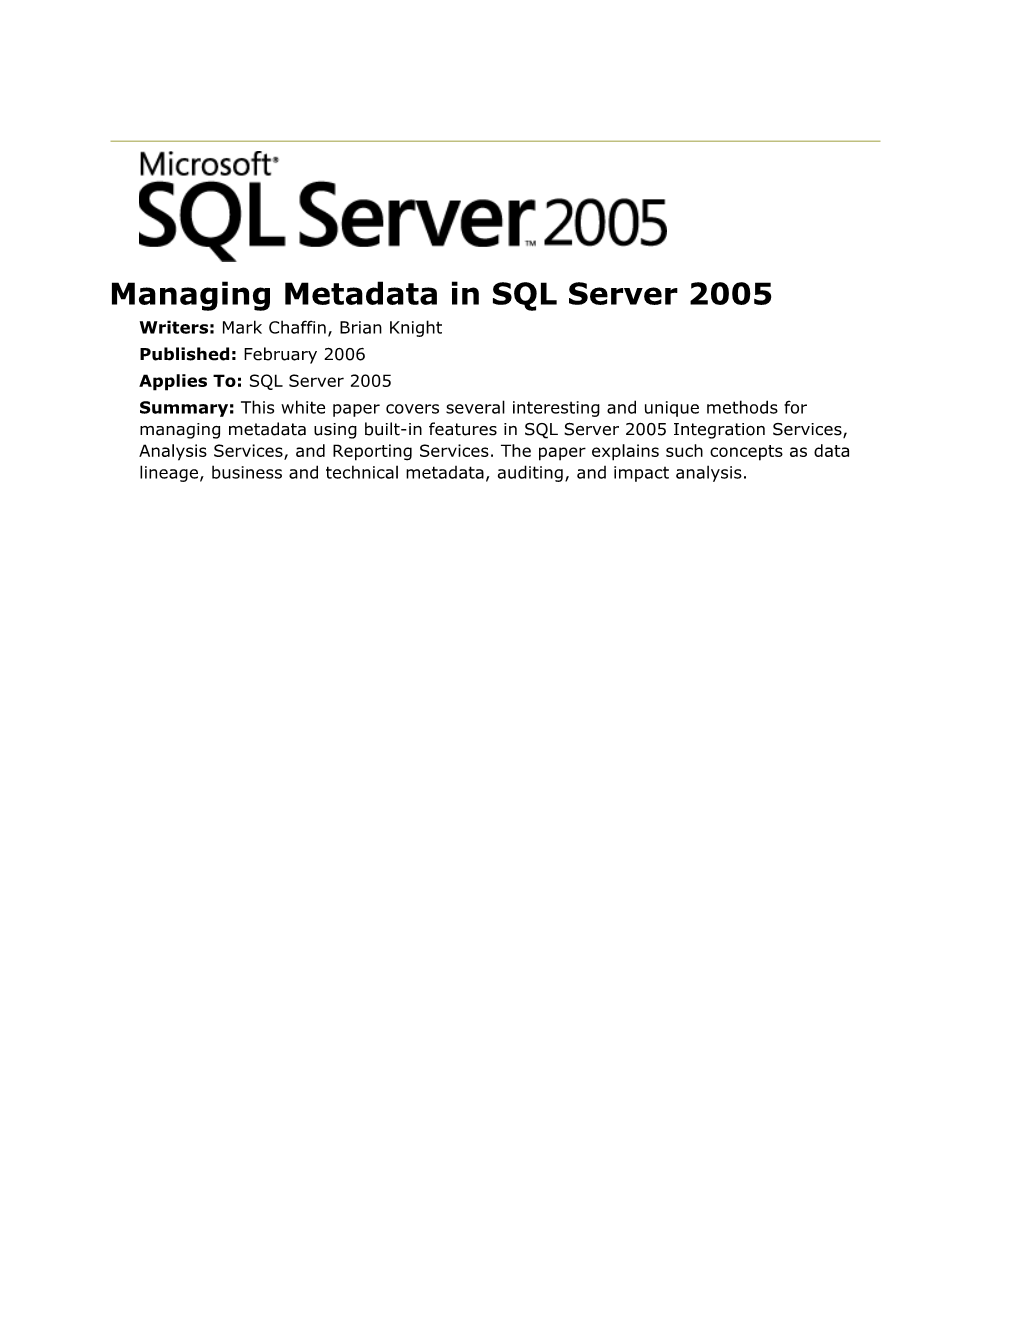 Managing Metadata in SQL Server 2005